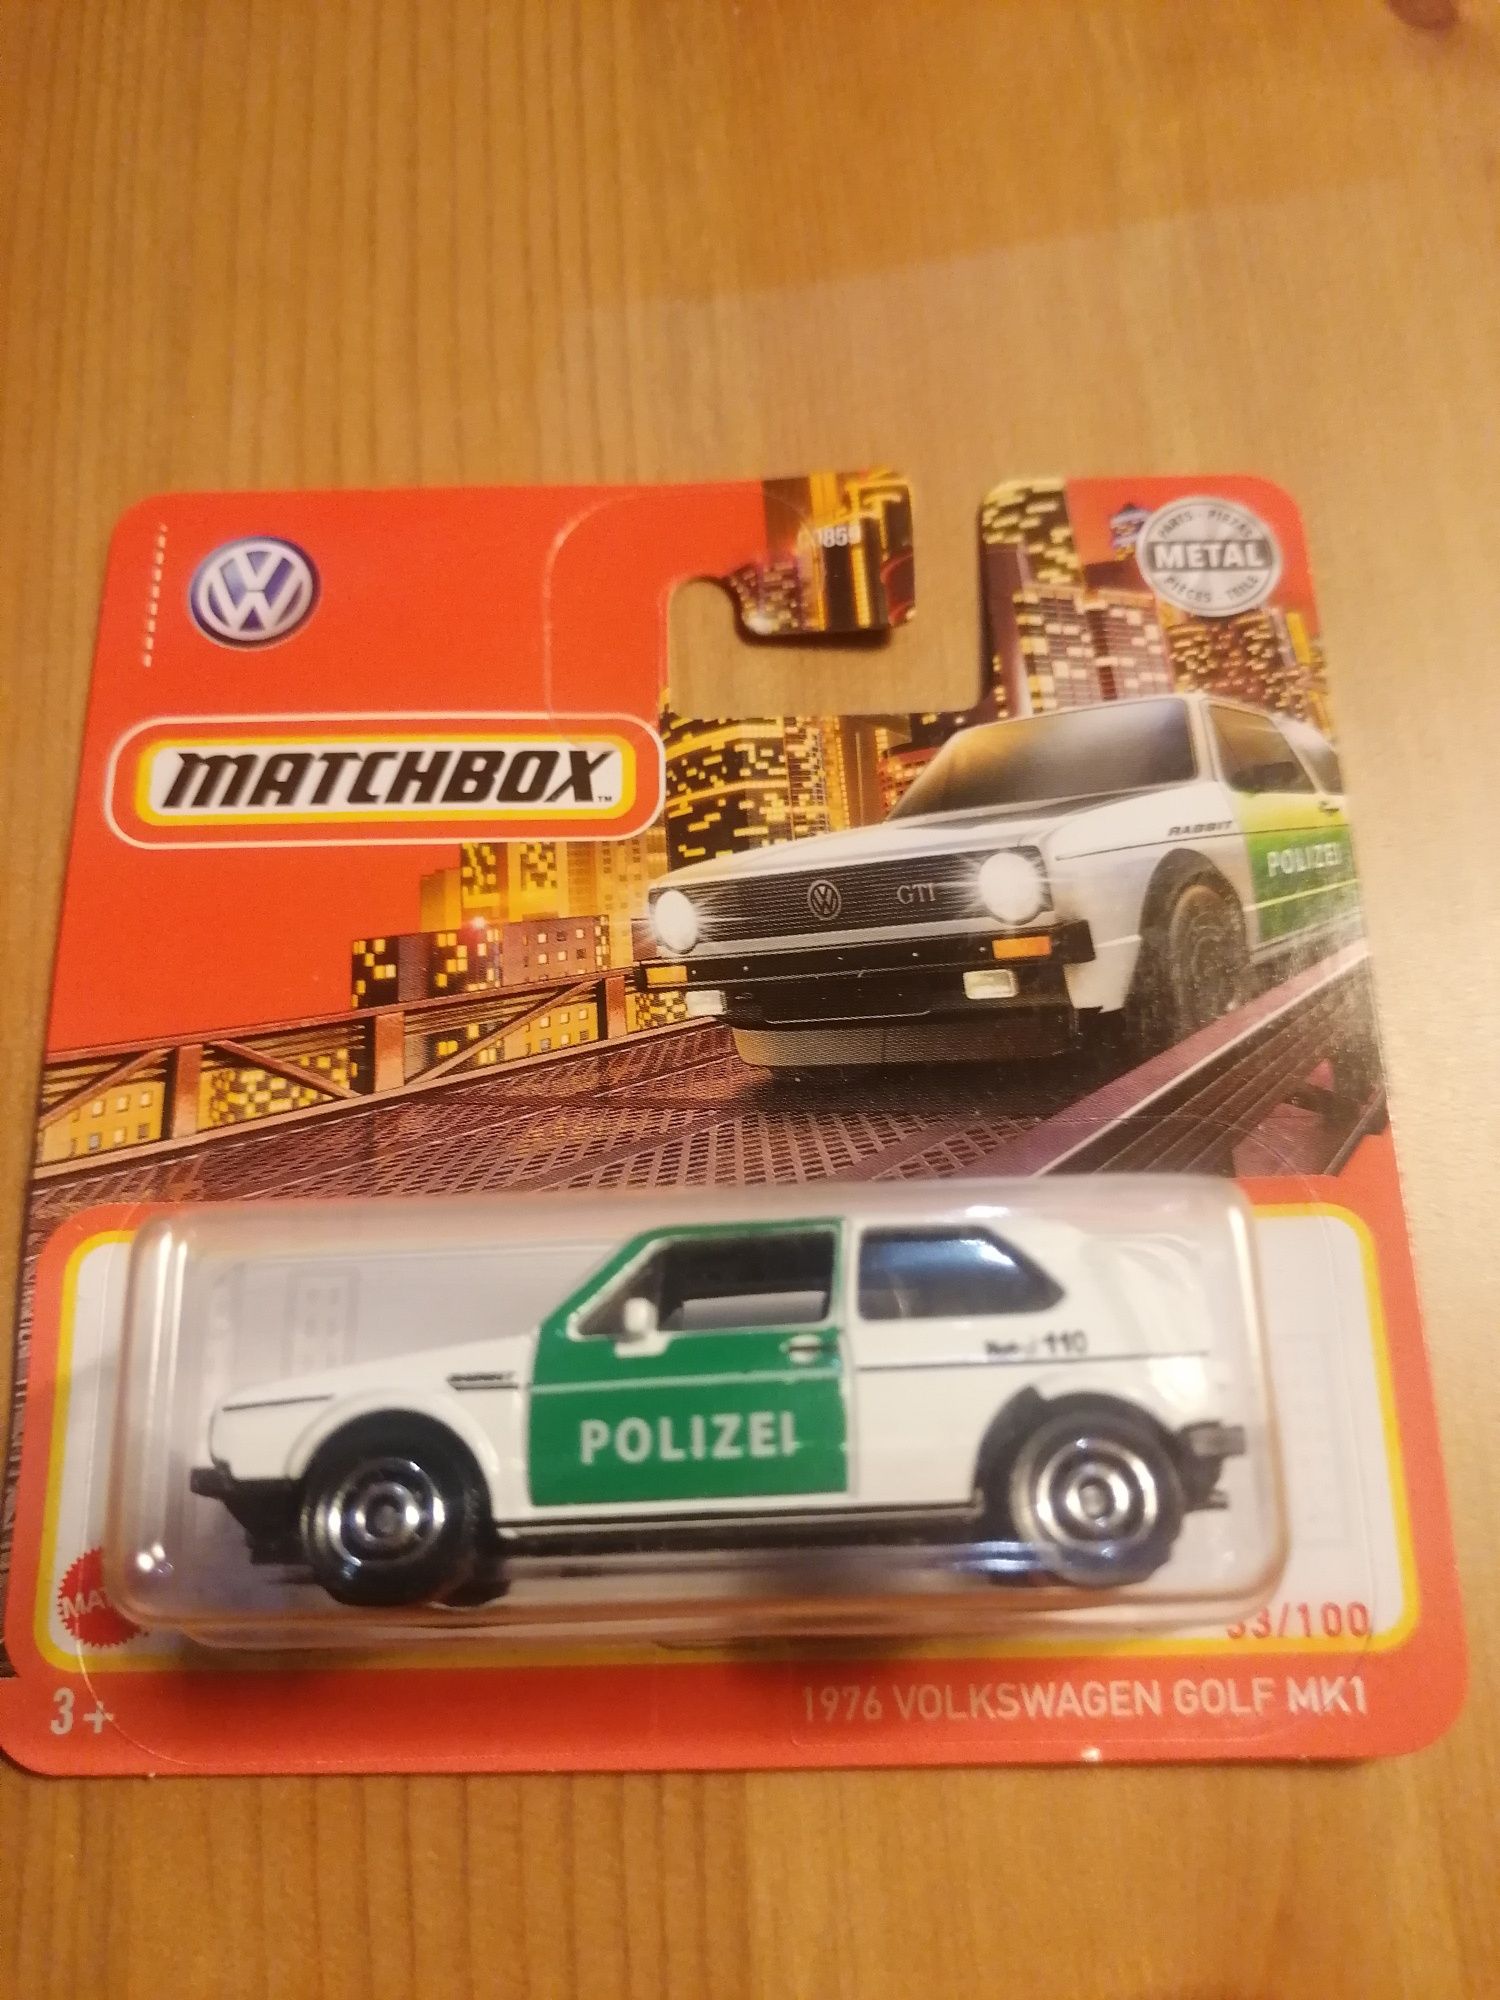 1976 Volkswagen Golf Mk1 Polizei Matchbox